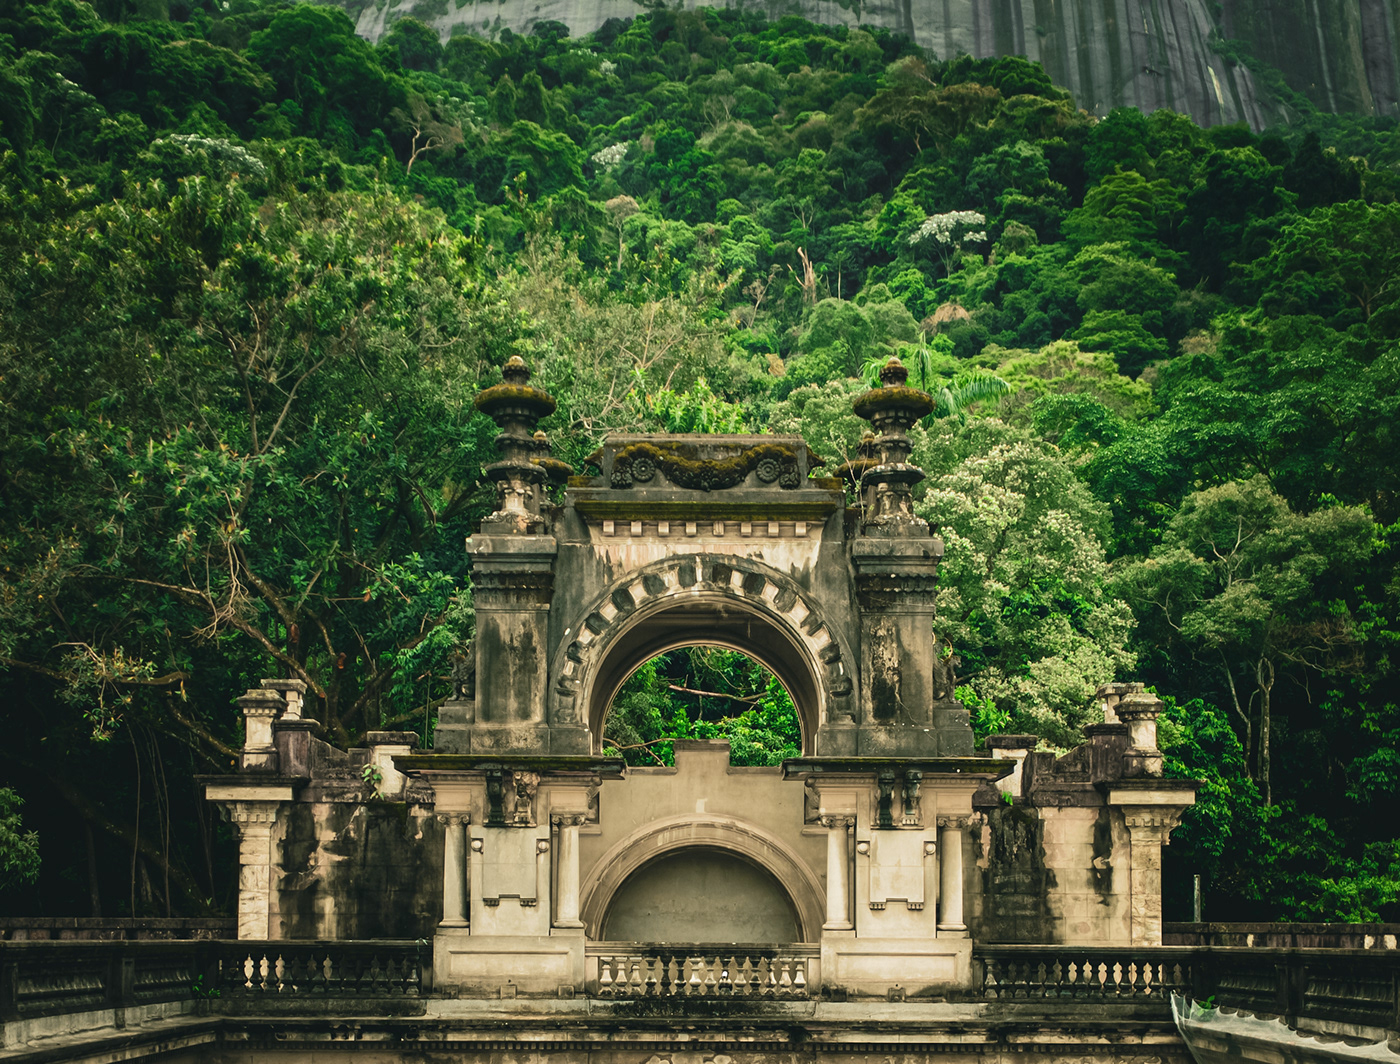 parque lage palace jardim jardim botânico Rio de Janeiro Brasil Brazil Photography  castel castelo